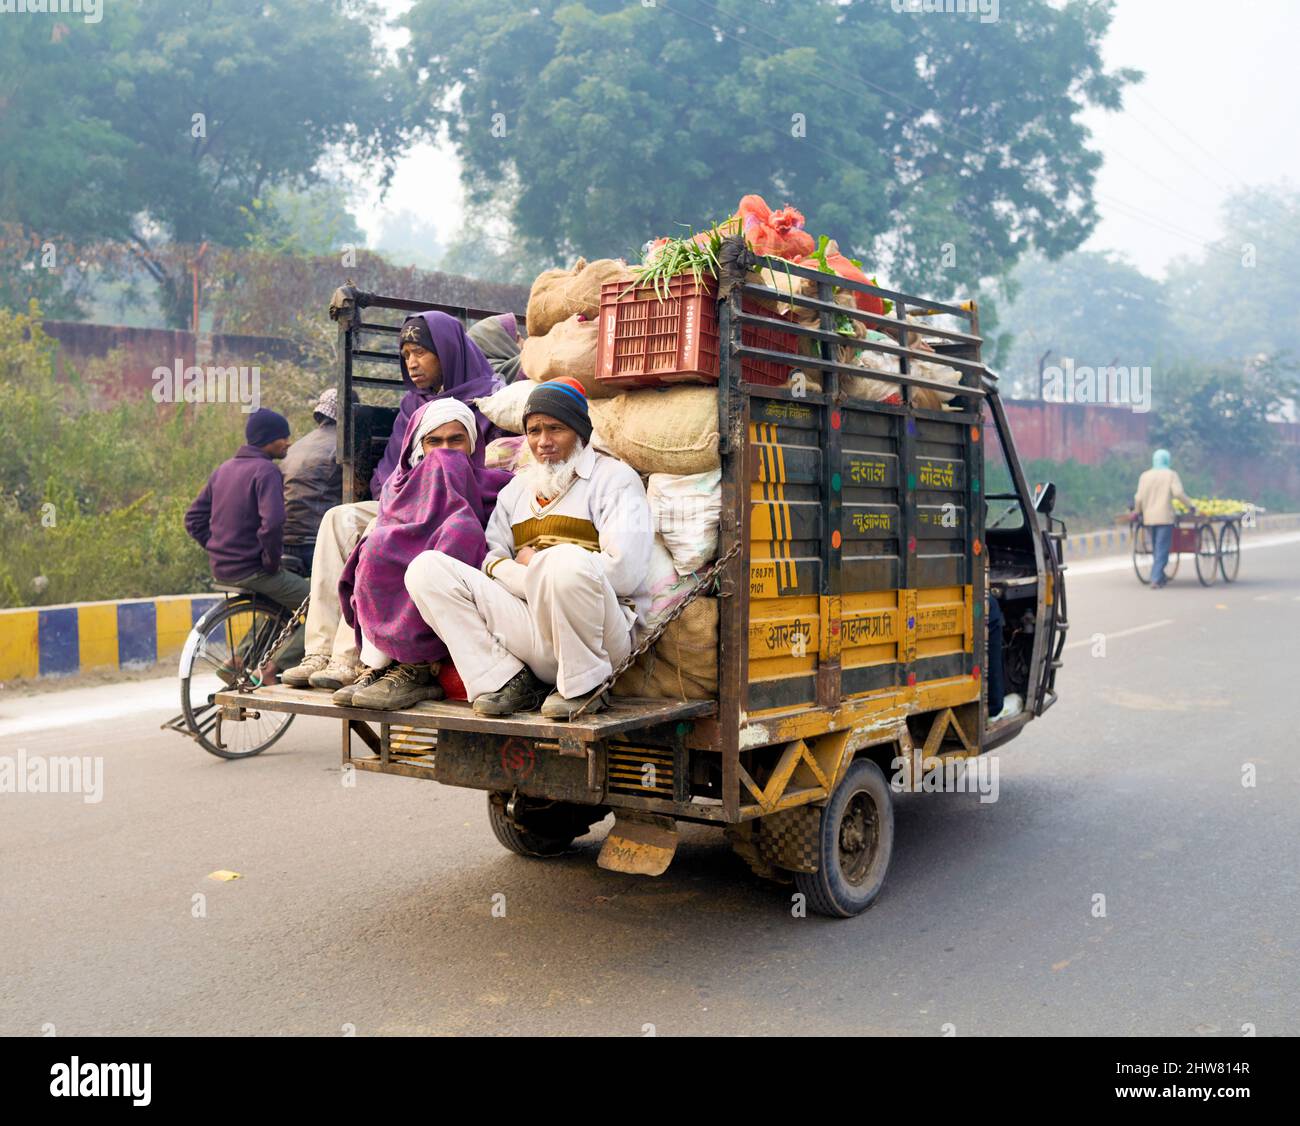 Inde Agra. Transport lent sur un véhicule à trois roues Banque D'Images